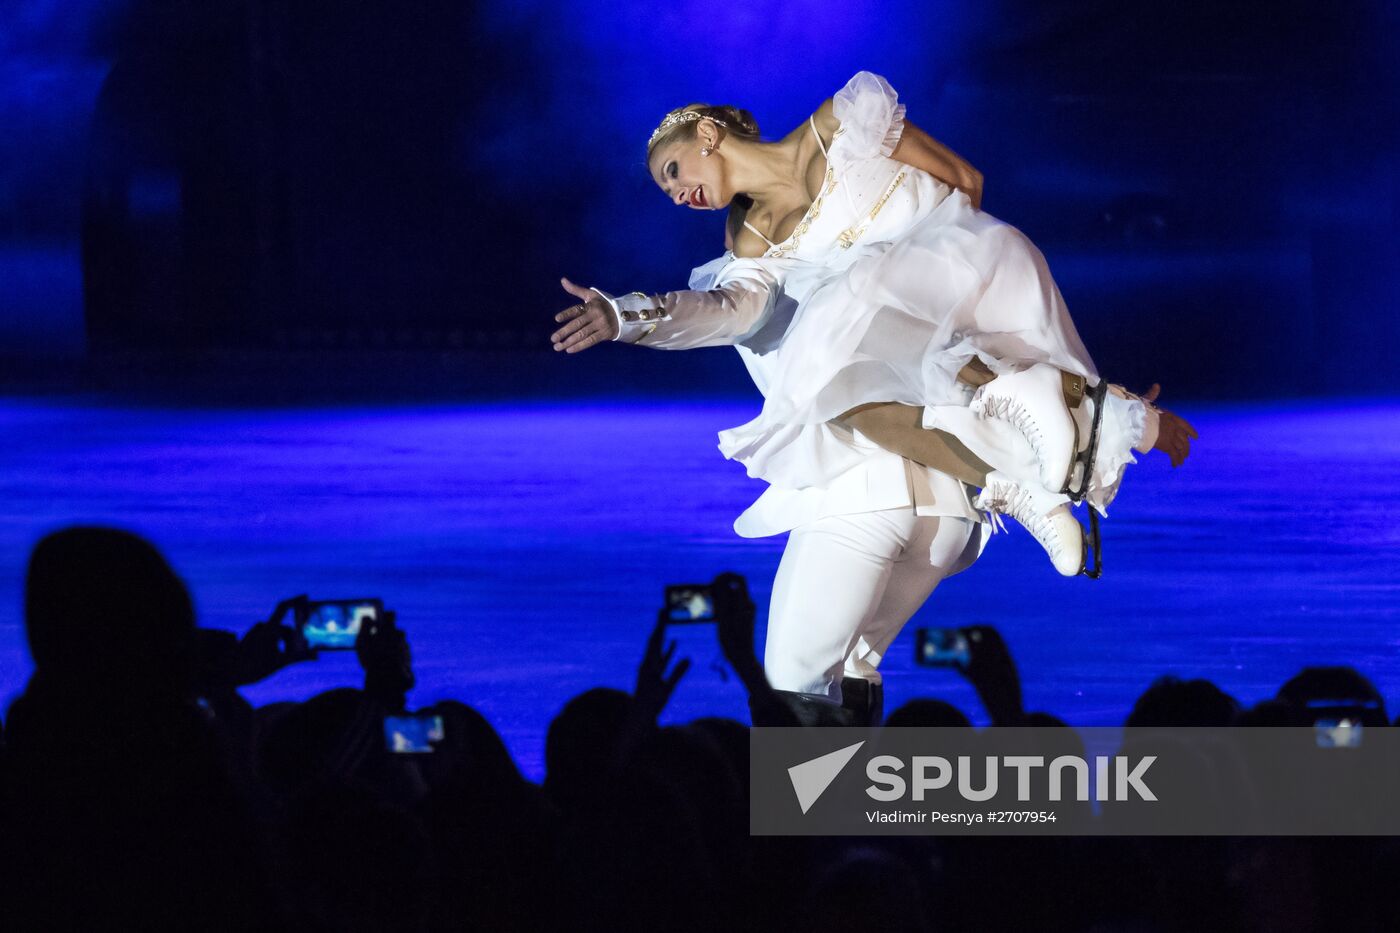 Tatiana Navka's ice skating show